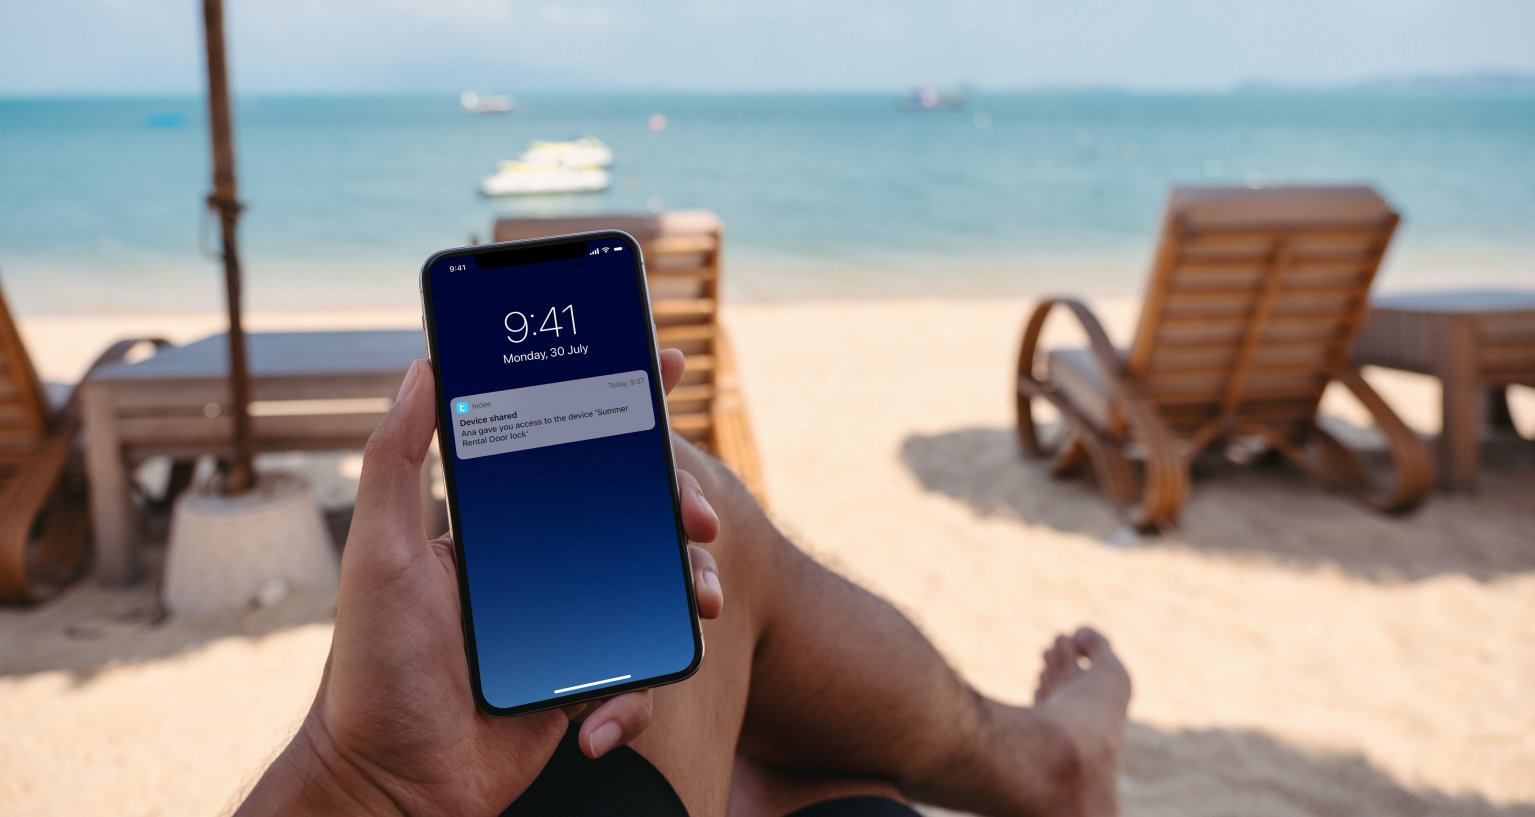 Uomo seduto sulla spiaggia riceve una notifica sullo smartphone